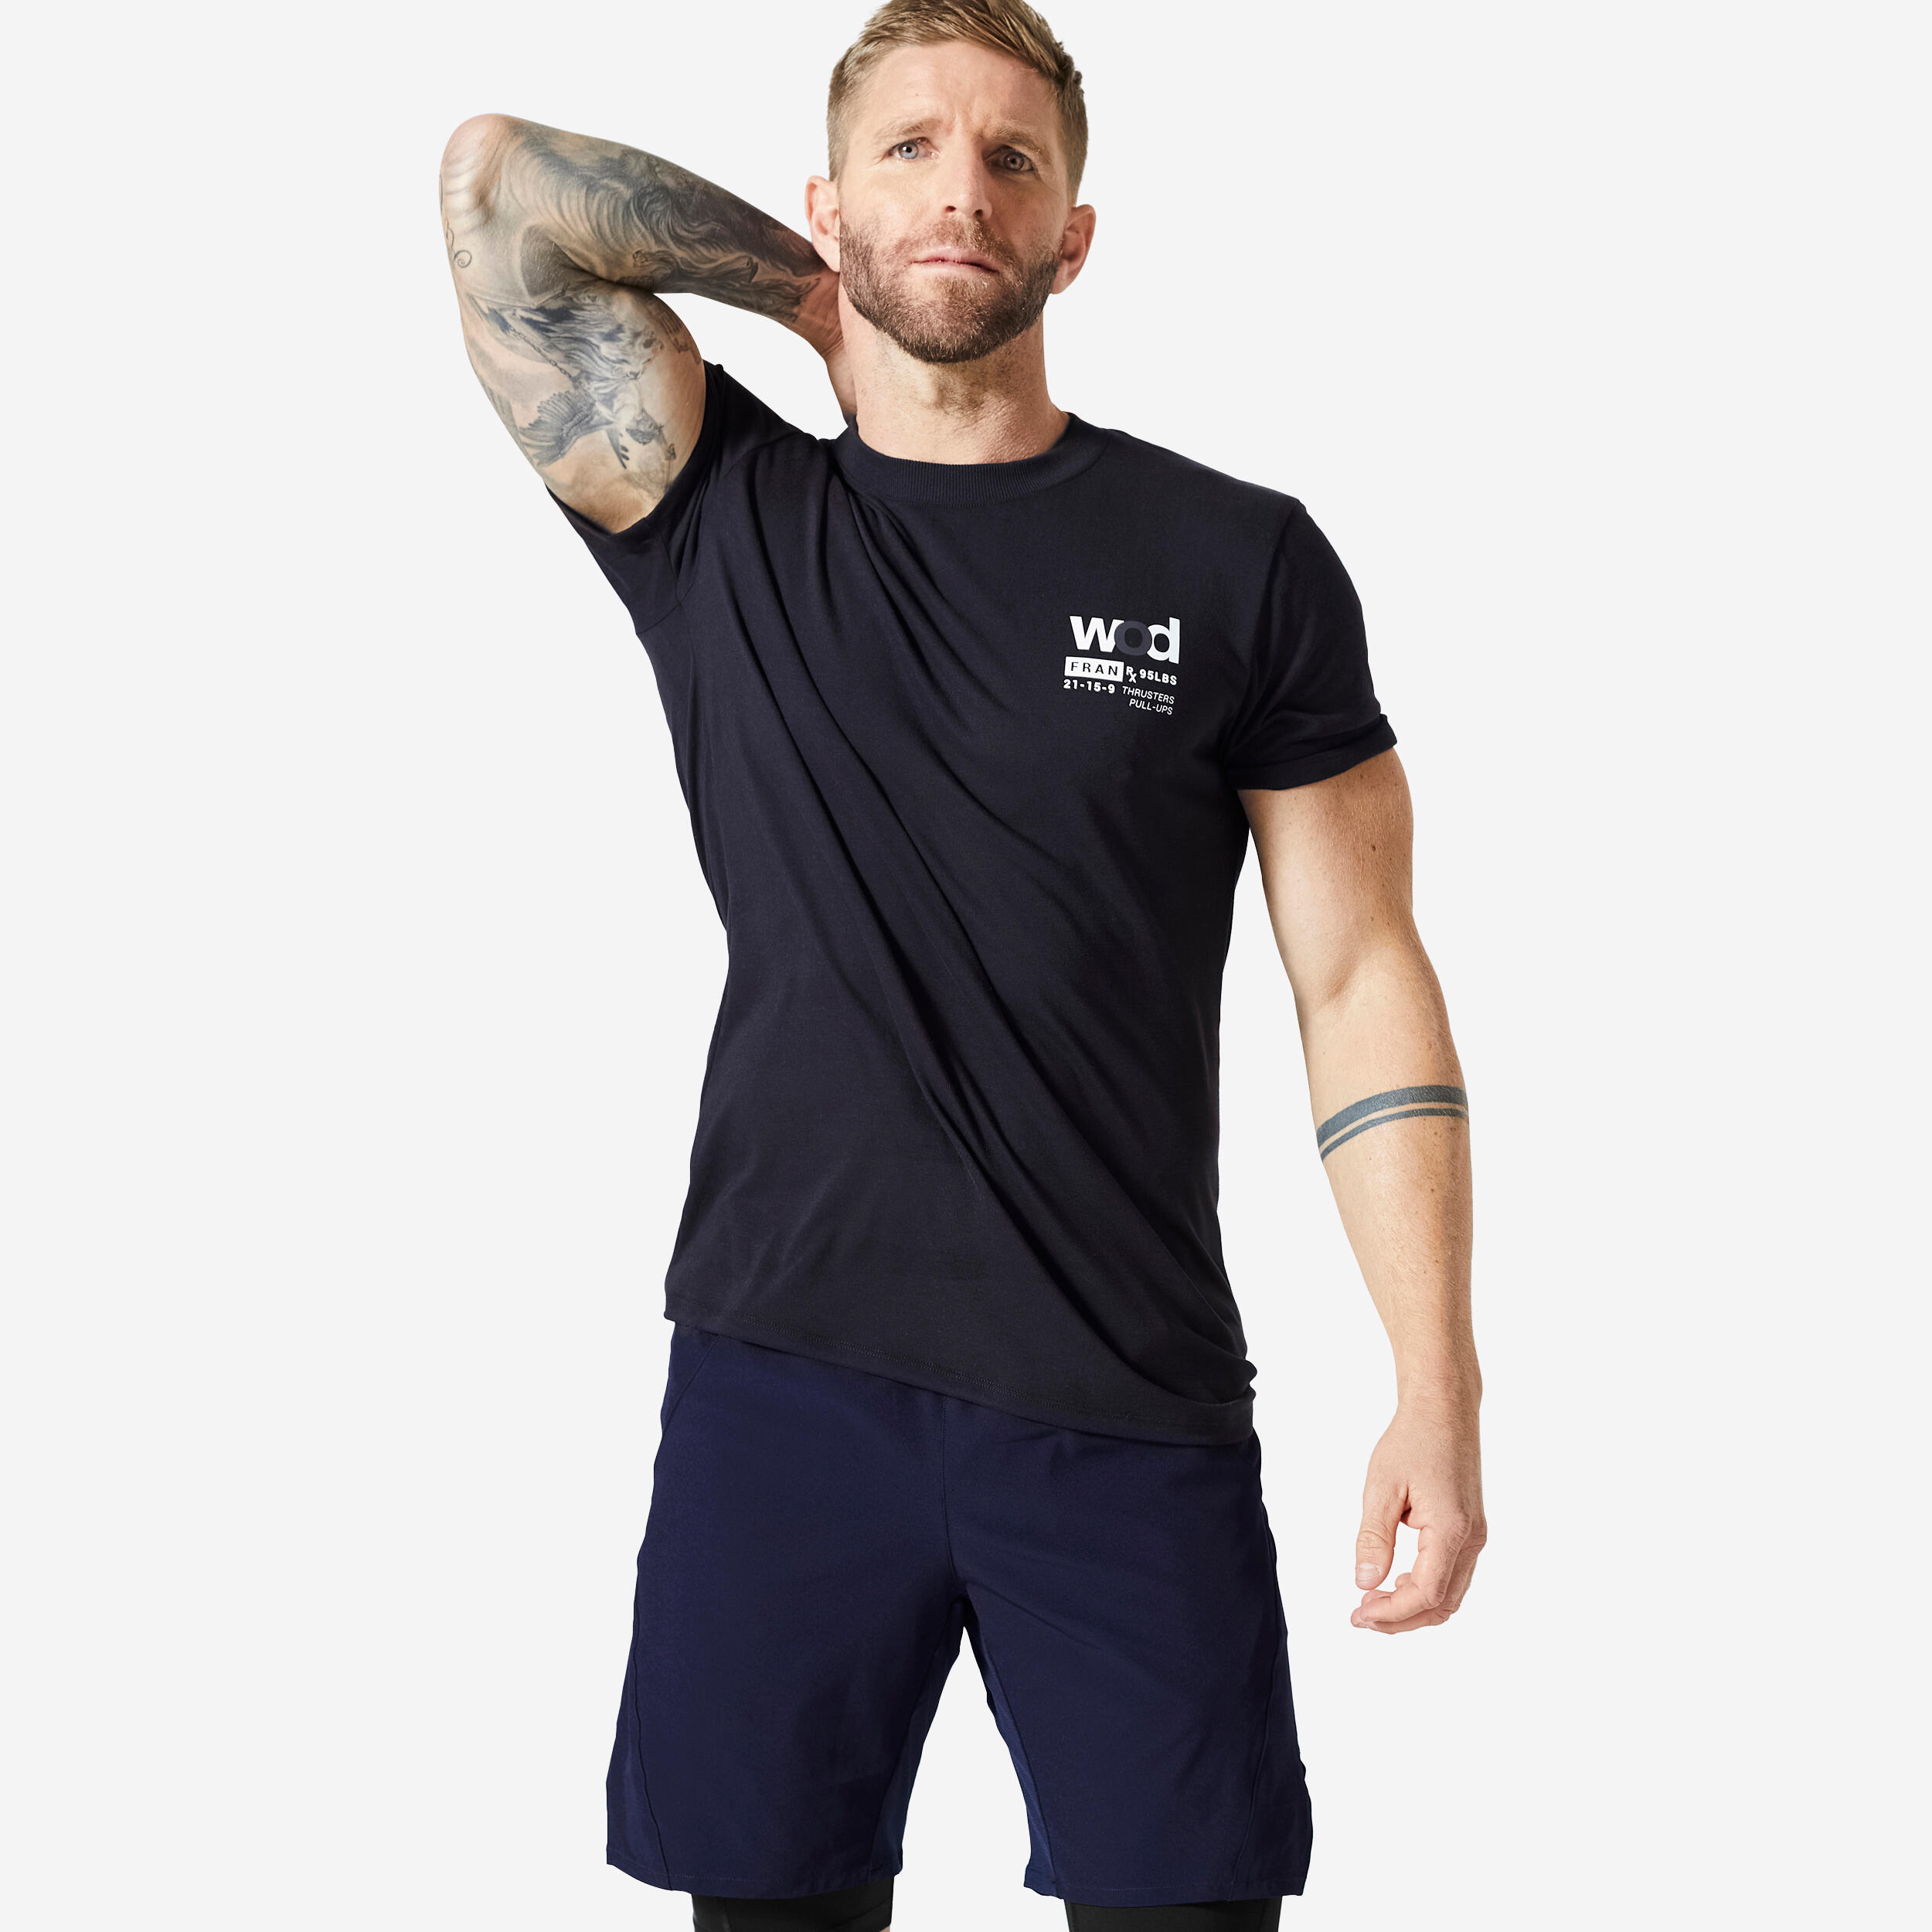 Decathlon | T-shirt nera uomo palestra slim fit traspirante |  Domyos